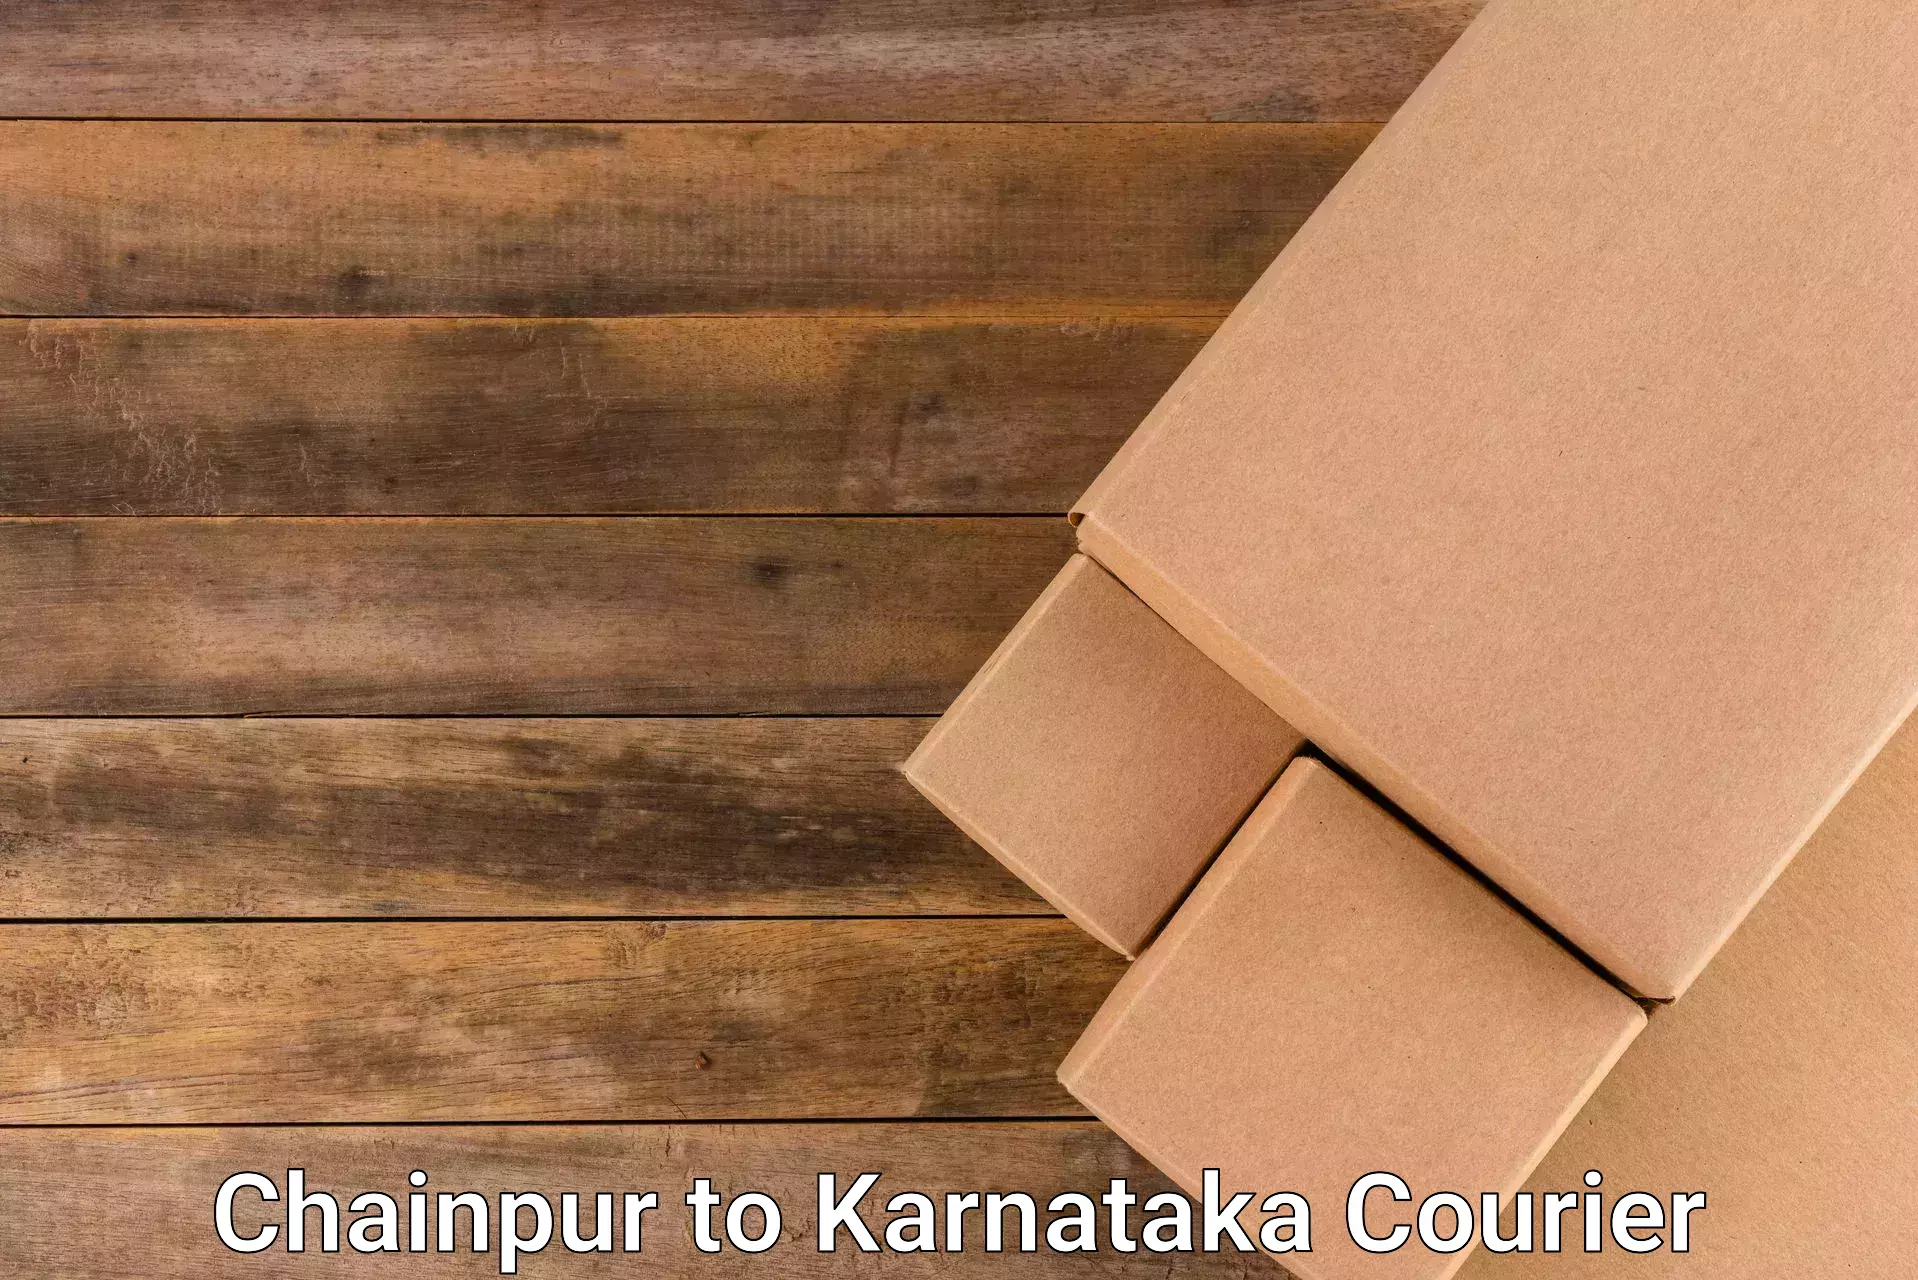 Ground shipping Chainpur to Karnataka